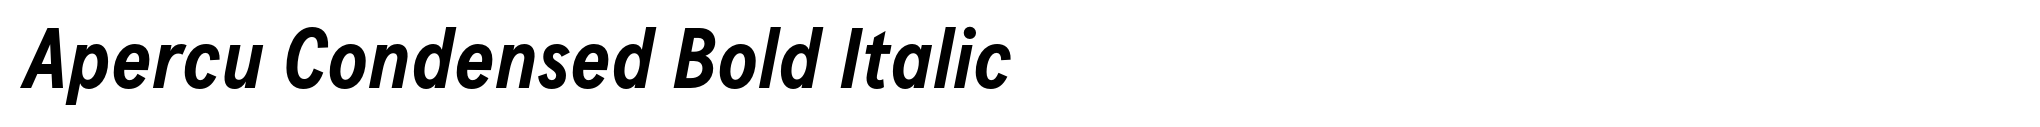 Apercu Condensed Bold Italic image